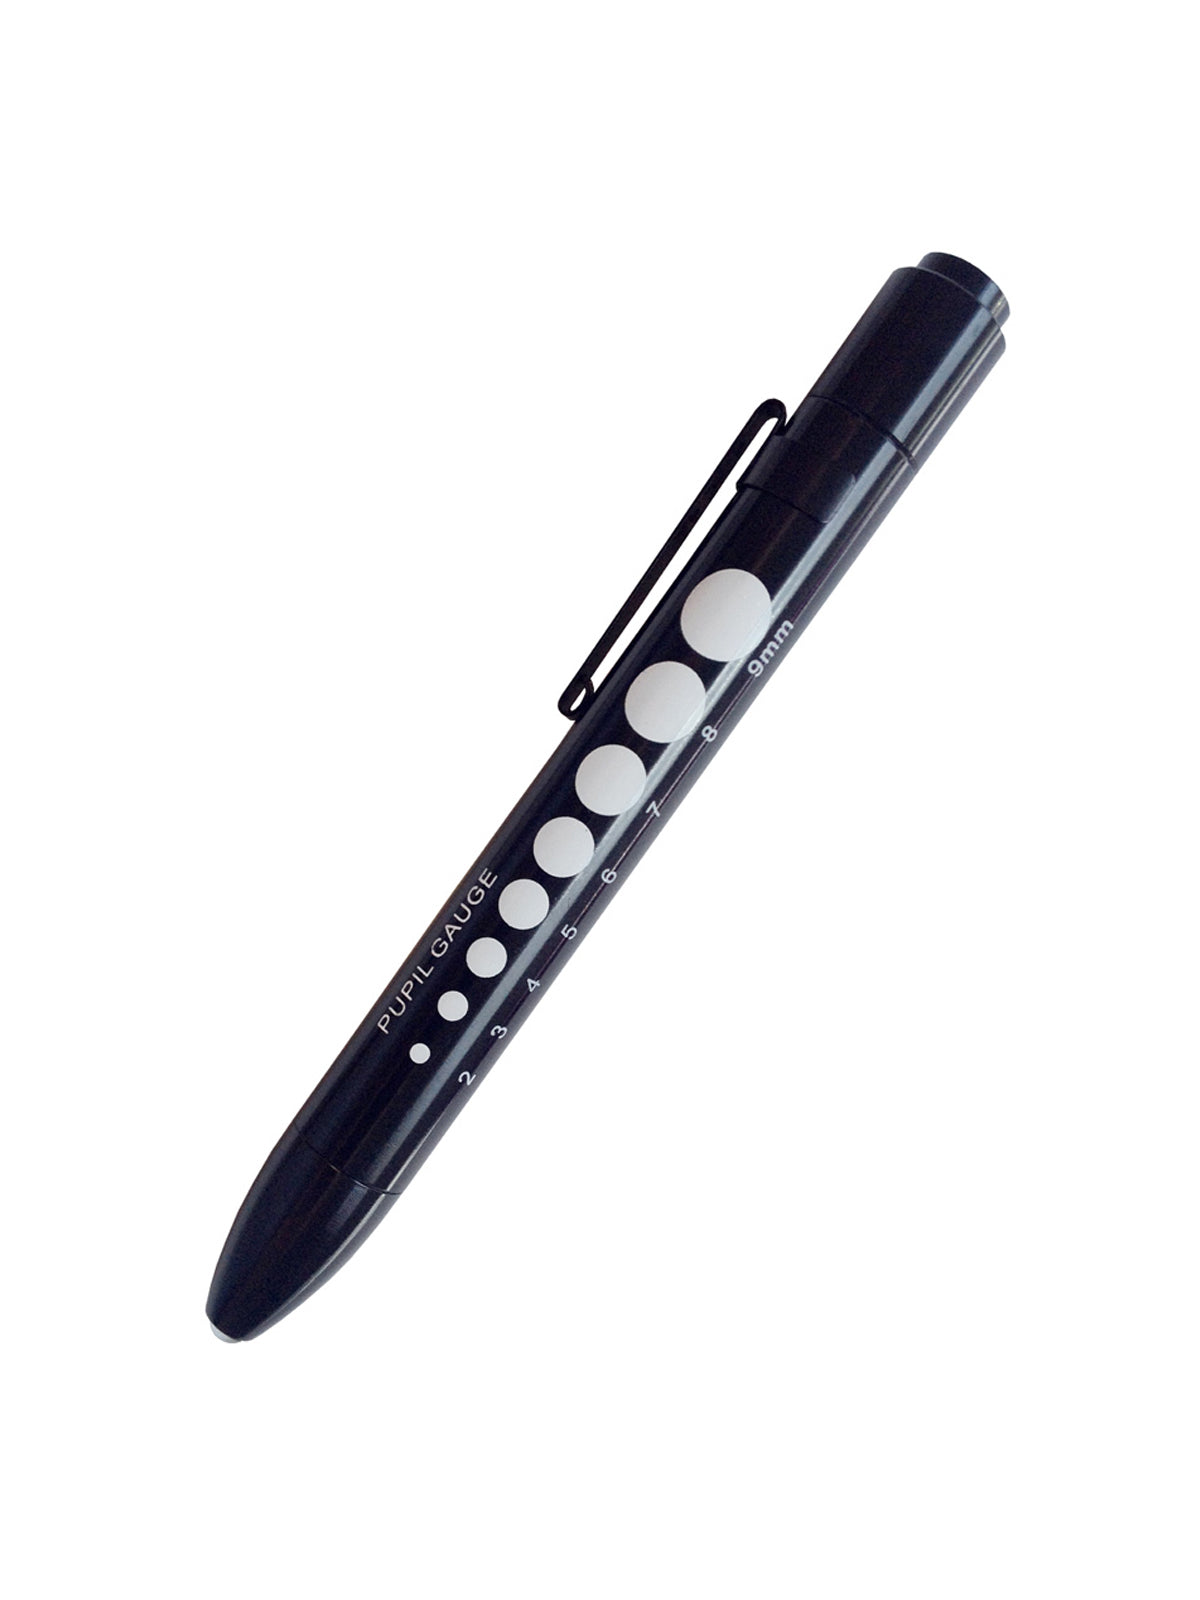 Soft Led Pupil Gauge Pen Light - 214 - Black